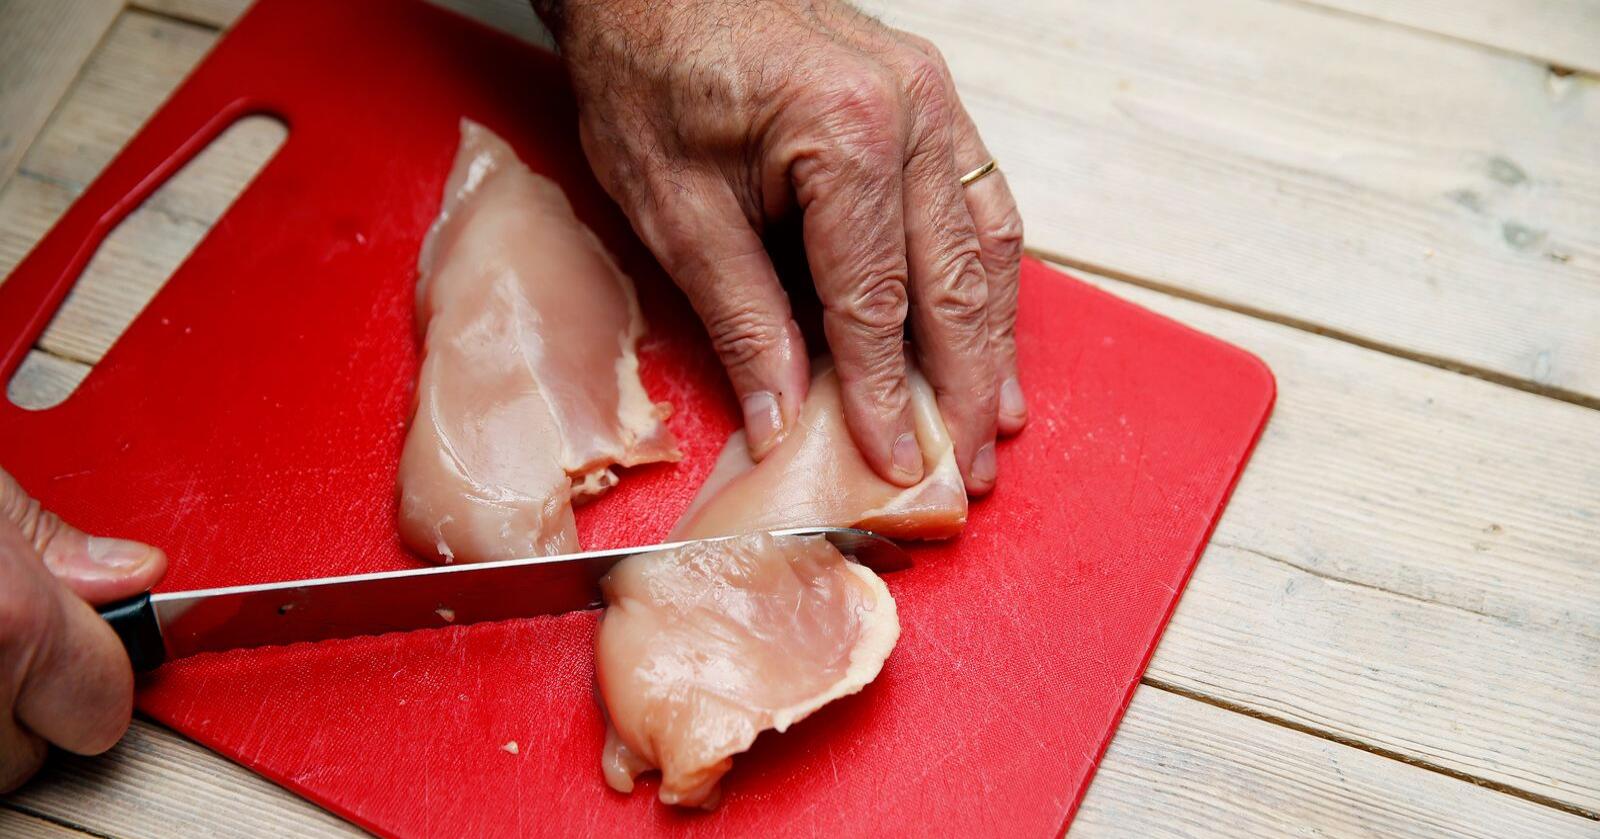 Islamsk Råd Norge forventer at det fortsatt vil produseres halalslaktet kylling i Norge. Illustrasjonsfoto: Cornelius Poppe / NTB